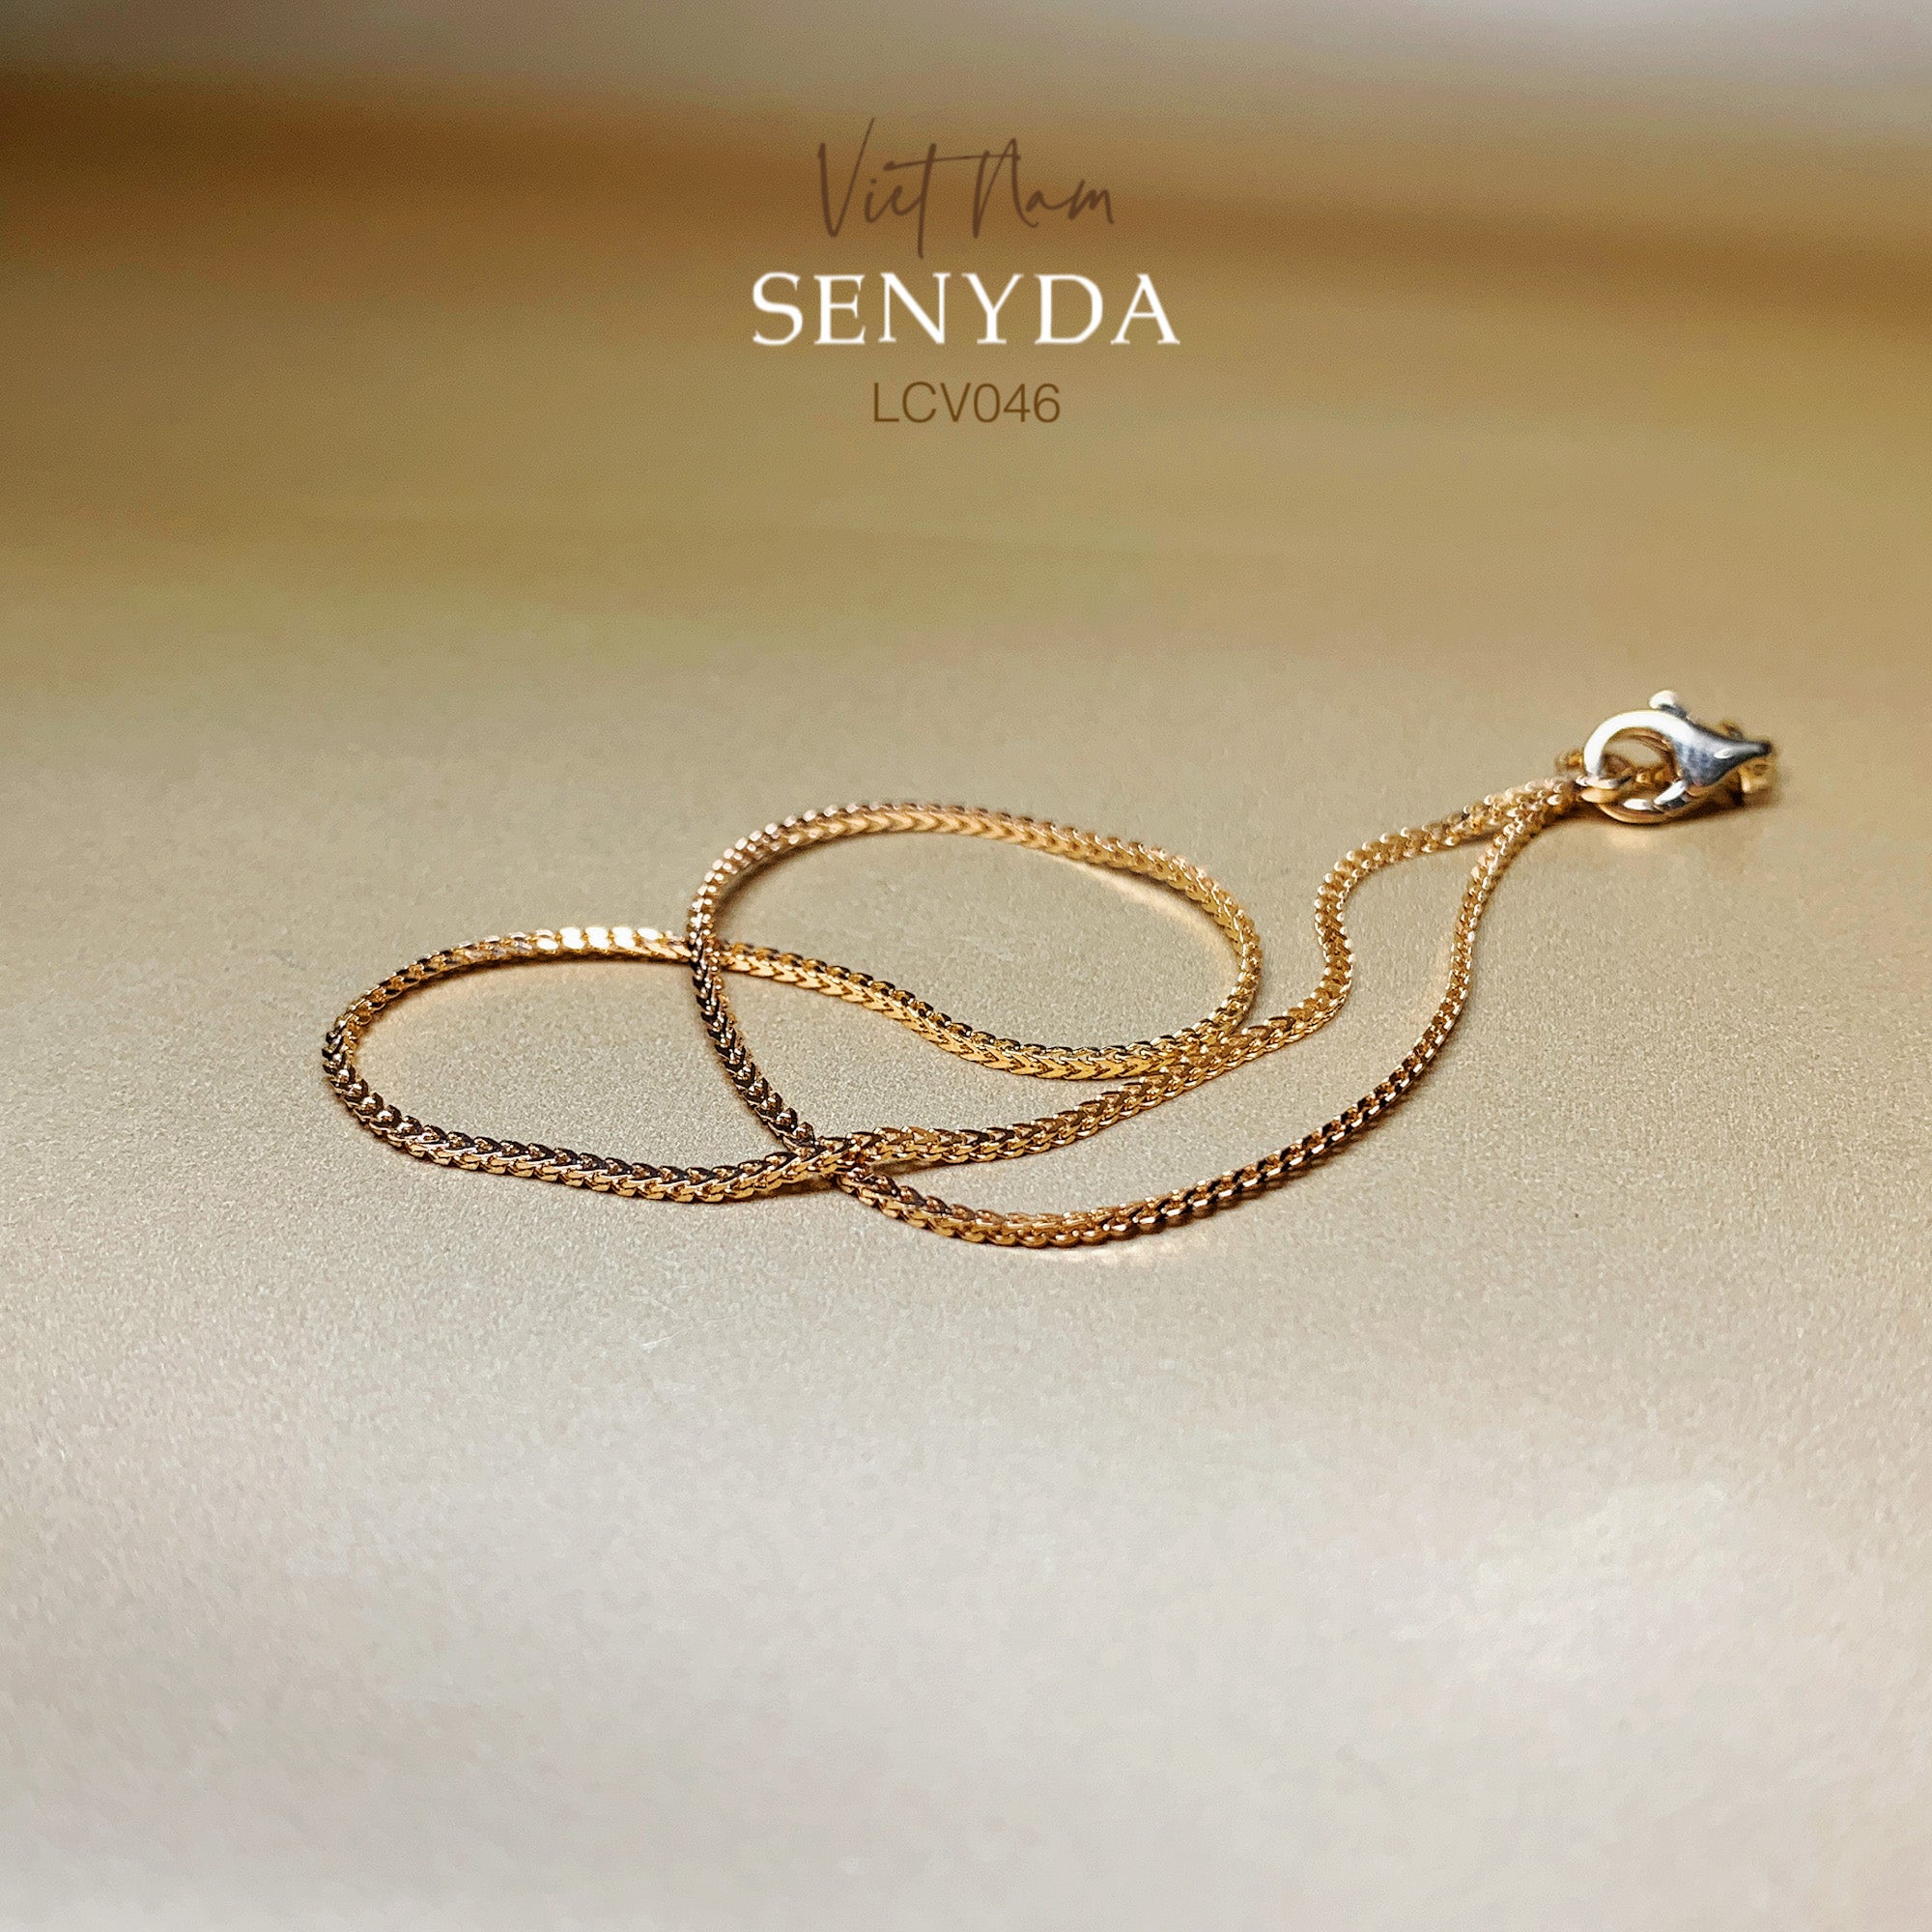 Senyda's square cord ankle bracelet